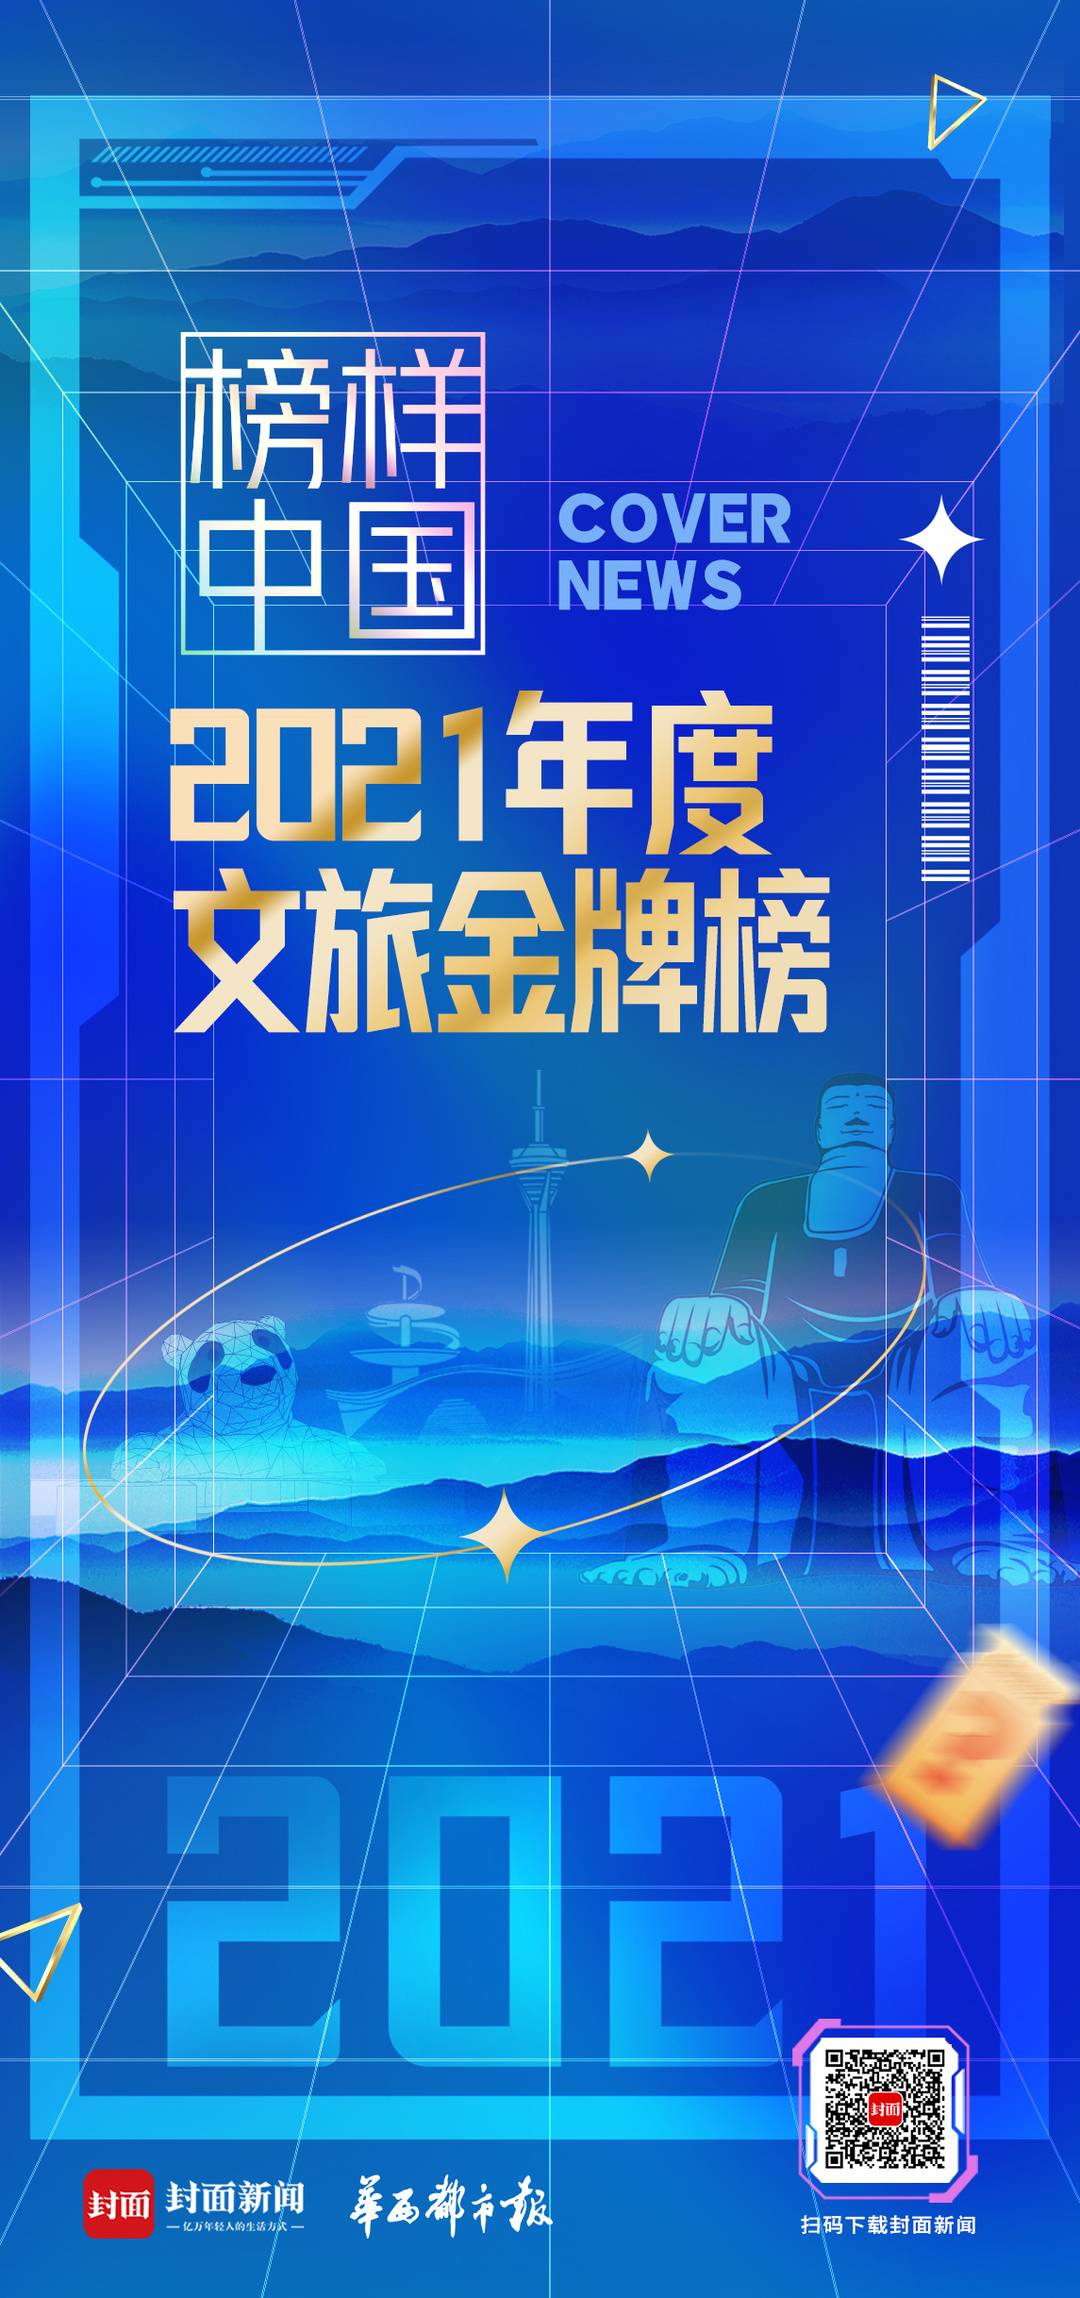 “榜样中国·2021年度文旅金牌榜”投票火热 安仁古镇、黄龙溪欢乐田园名列前茅